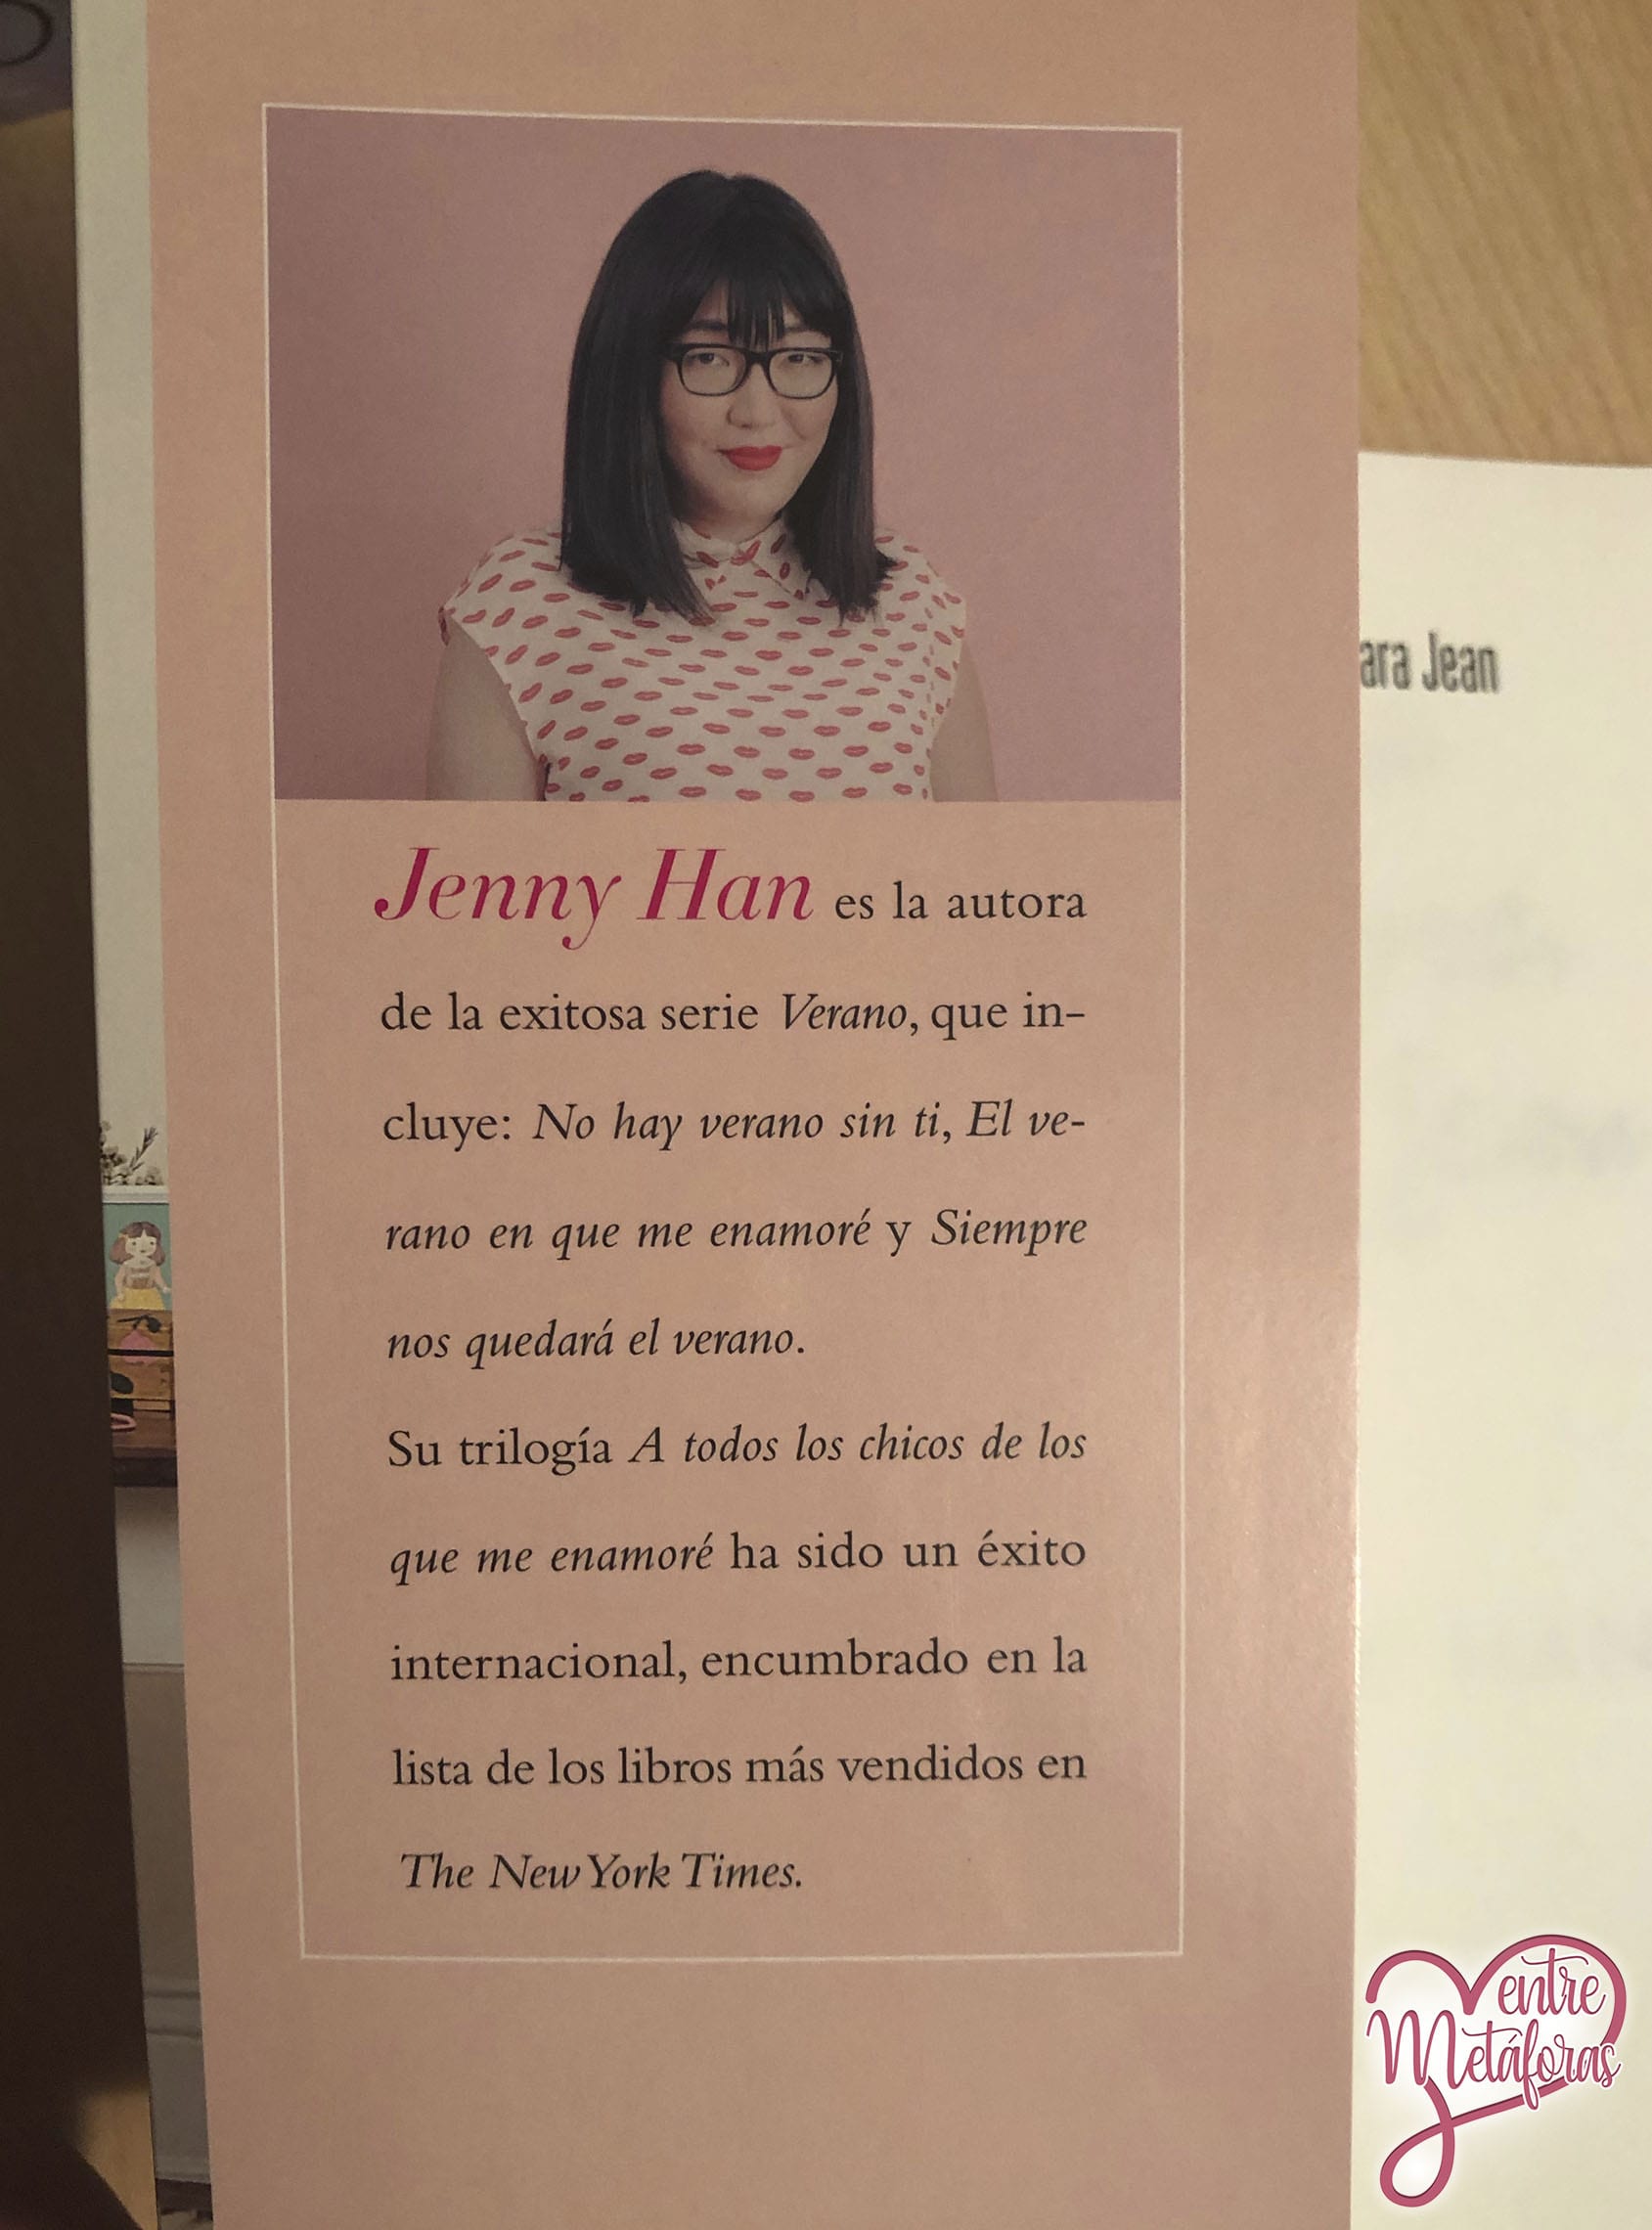 Para siempre, Lara Jean; de Jenny Han - Reseña